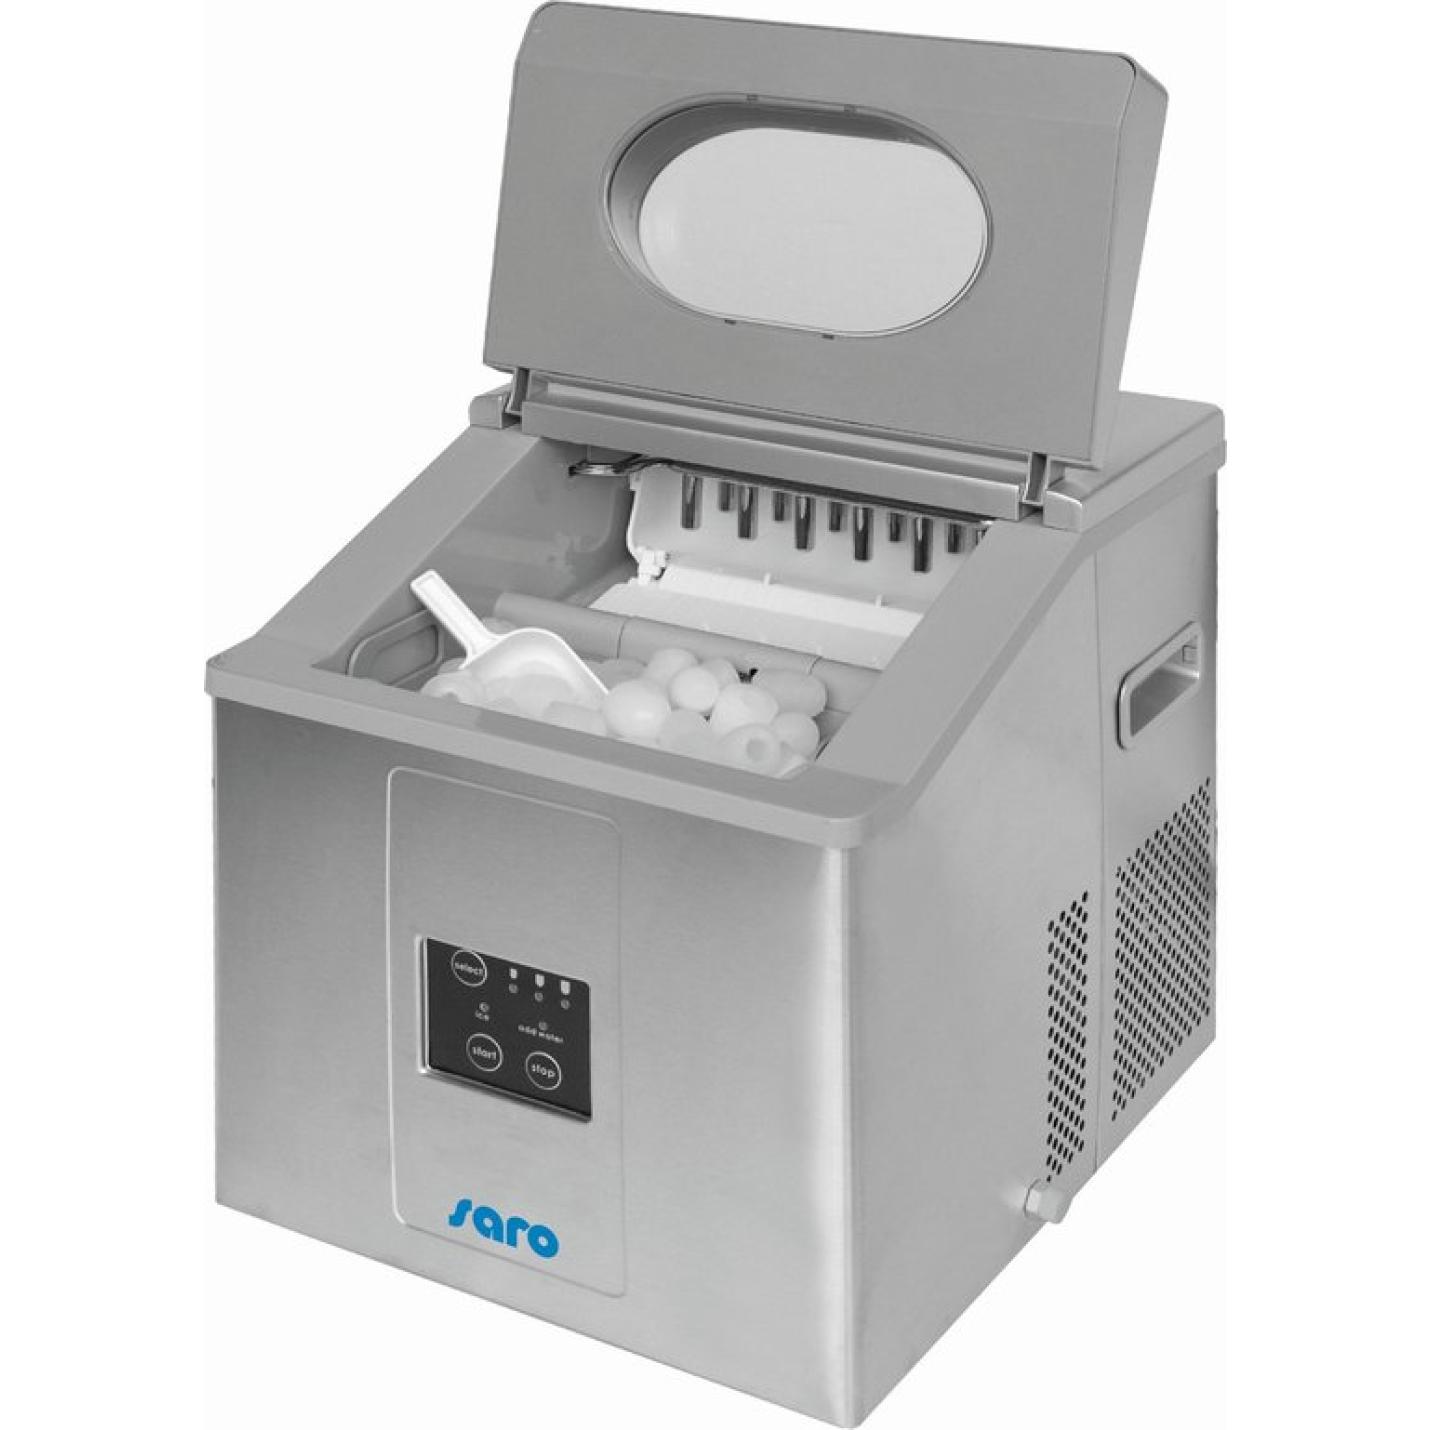 SARO Ijsblokjesmachine - 3 ijskegel maten - 2 jaar garantie - compact professioneel model EB 15